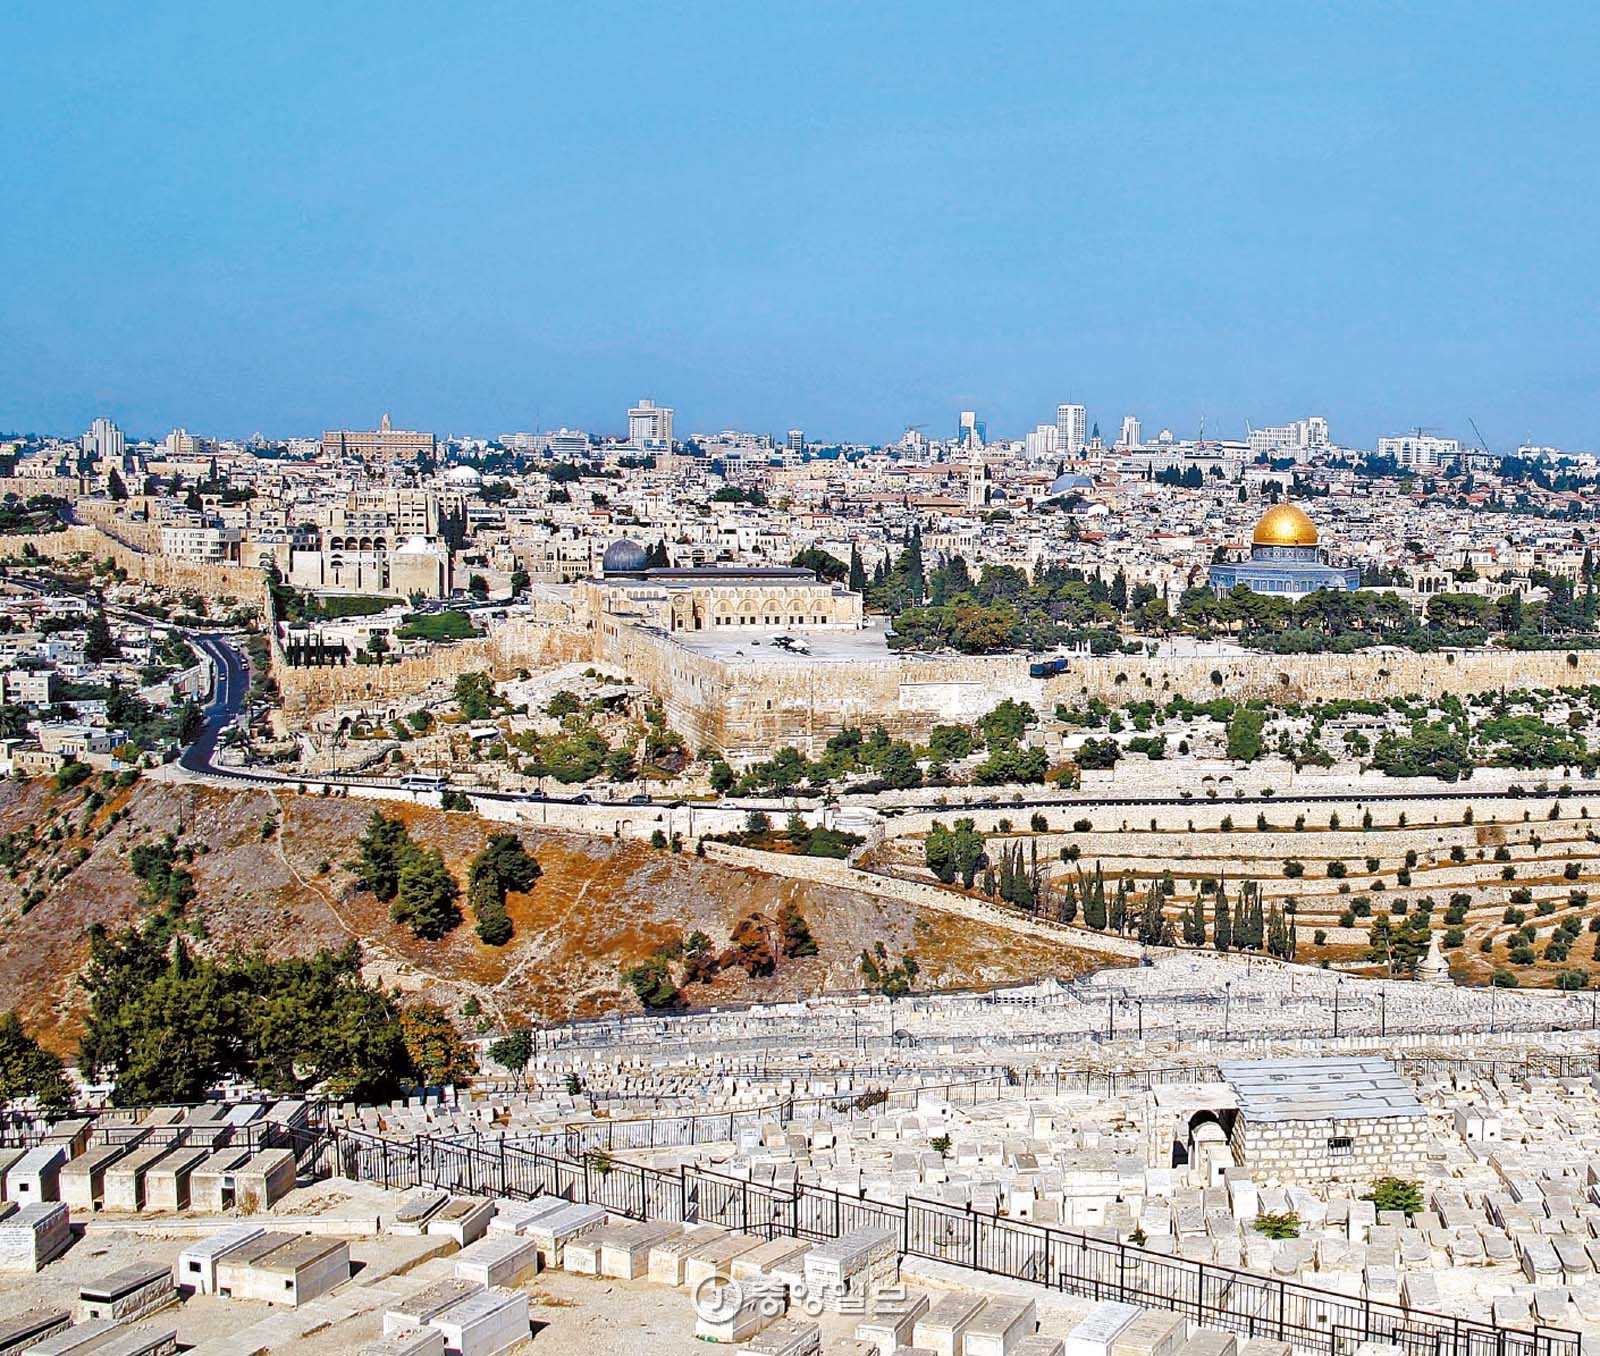 이스라엘 예루살렘은 기독교·유대교·이슬람교의 성지가 한 데 몰려 있는 복잡한 도시다. 올리브산 정상에서 보면 이슬람 사원과 교회, 유대인 공동묘지가 한눈에 들어온다. 황금 지붕 건물이 이슬람교의 성지에 놓인 바위사원(Dome of the Rock)이다.